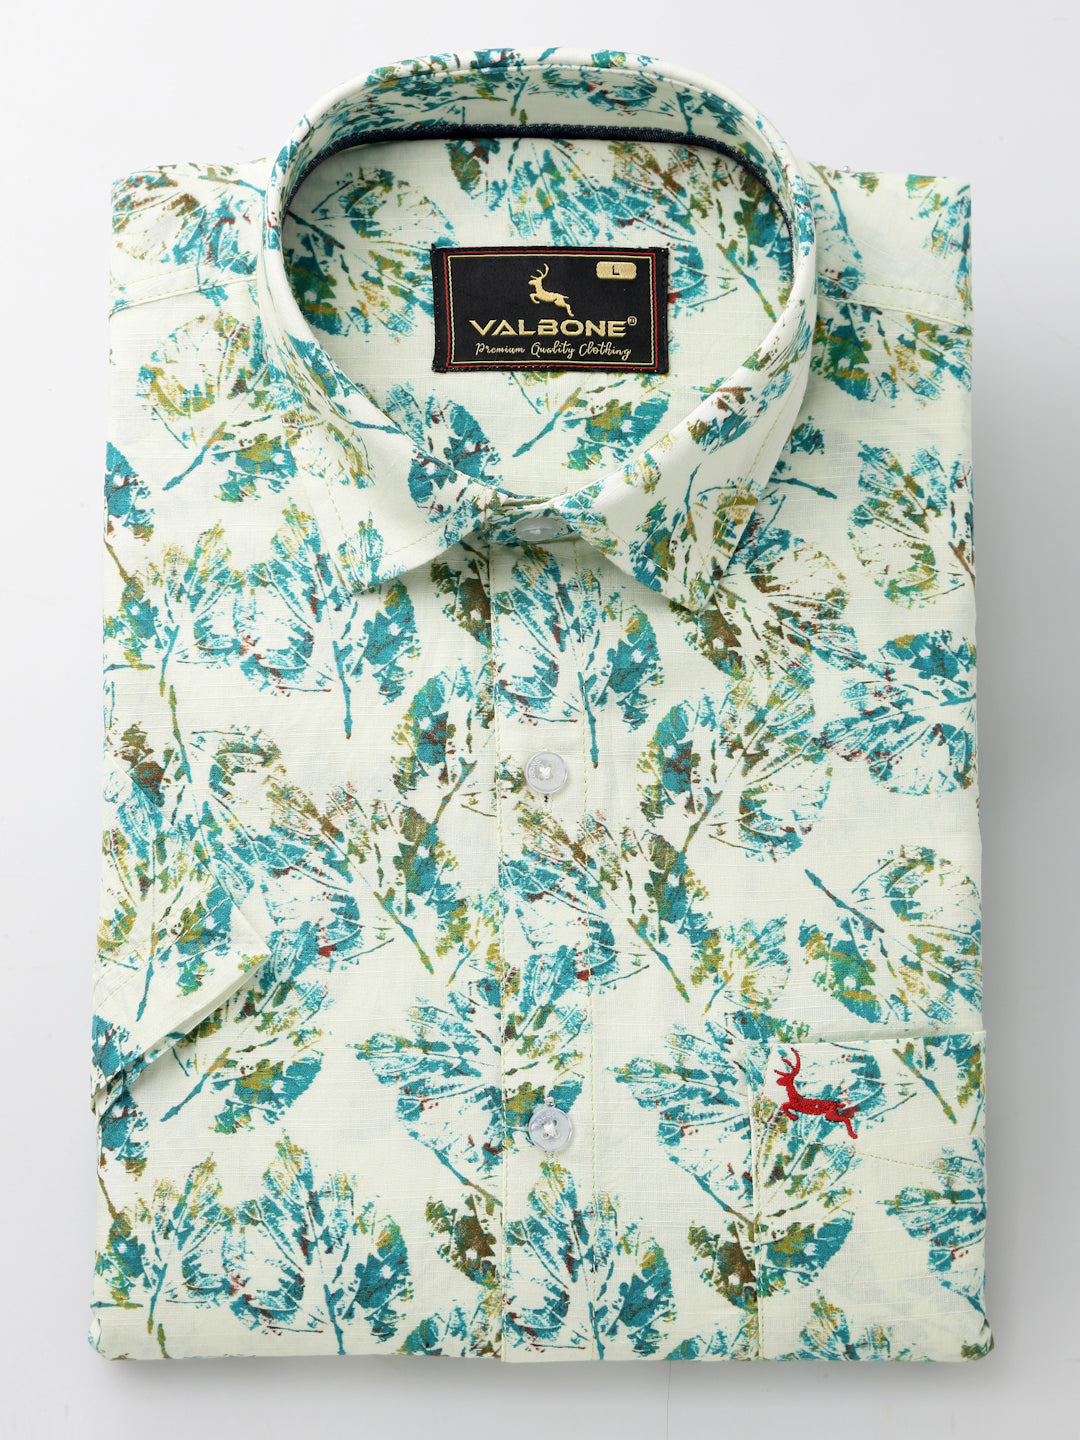 Valbone Men’s Green Digital Print Leaves Printed Regular Fit Casual Shirt Half Sleeves